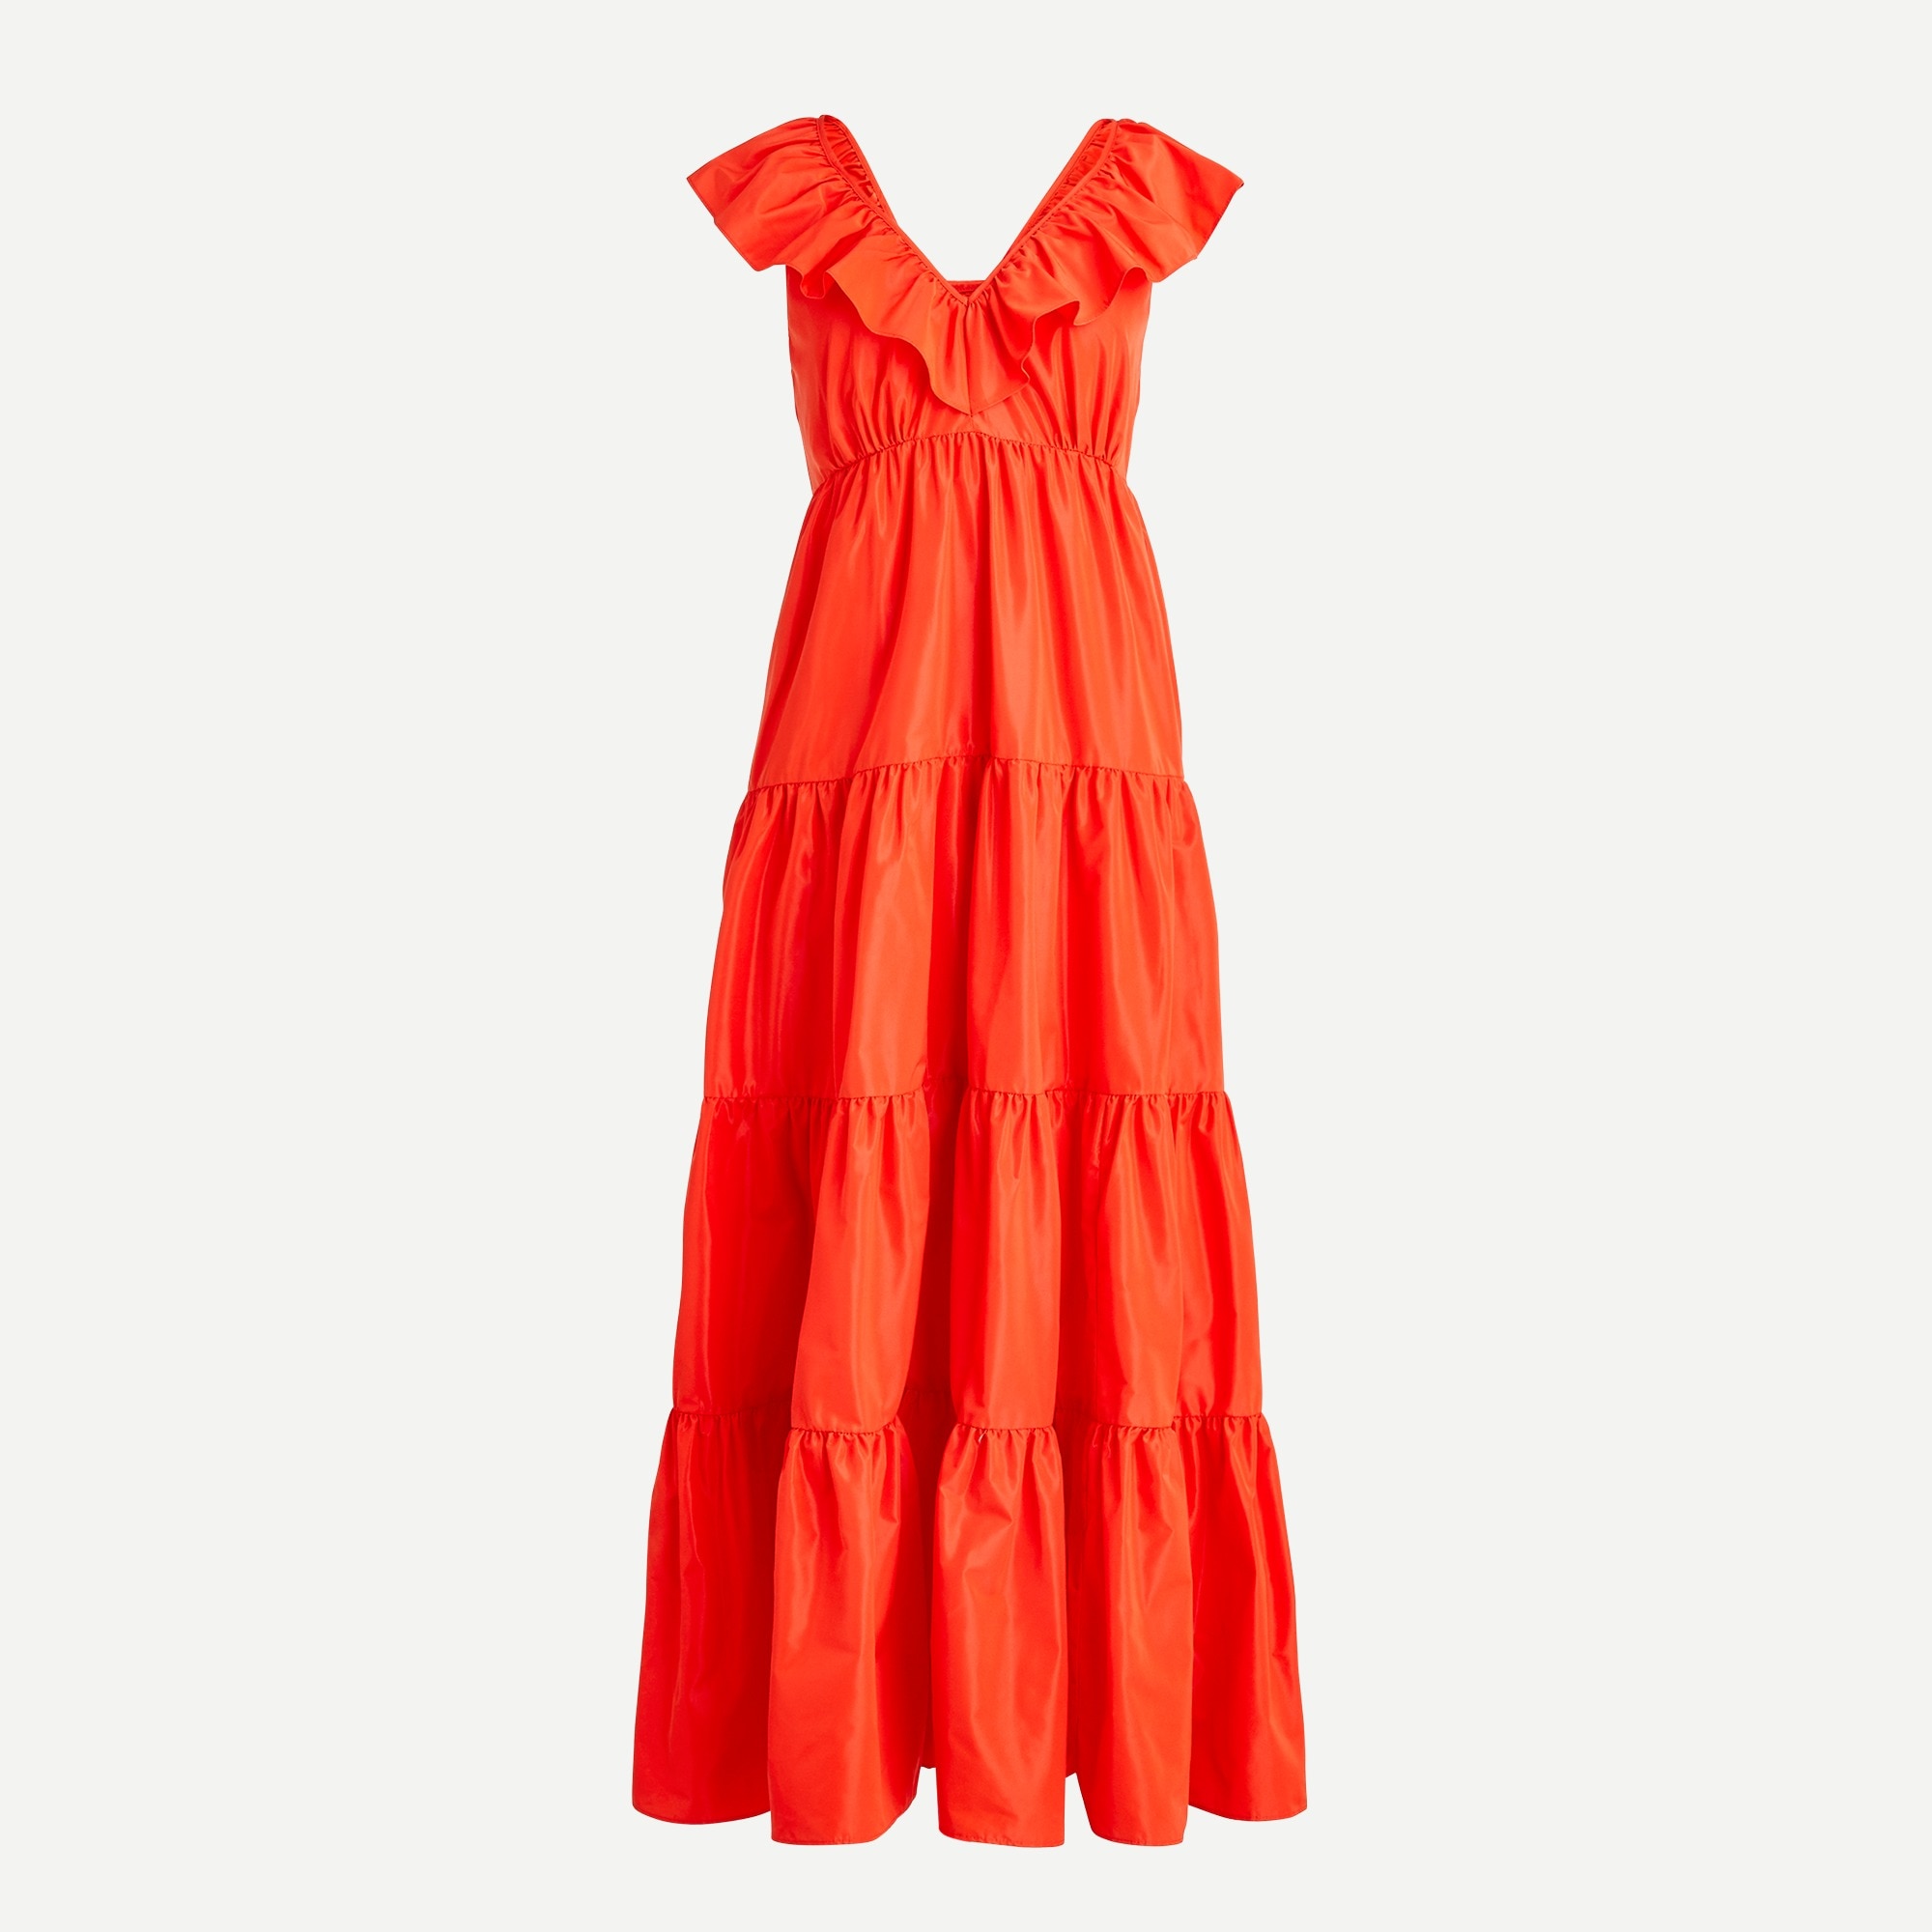 ruffled dresses online